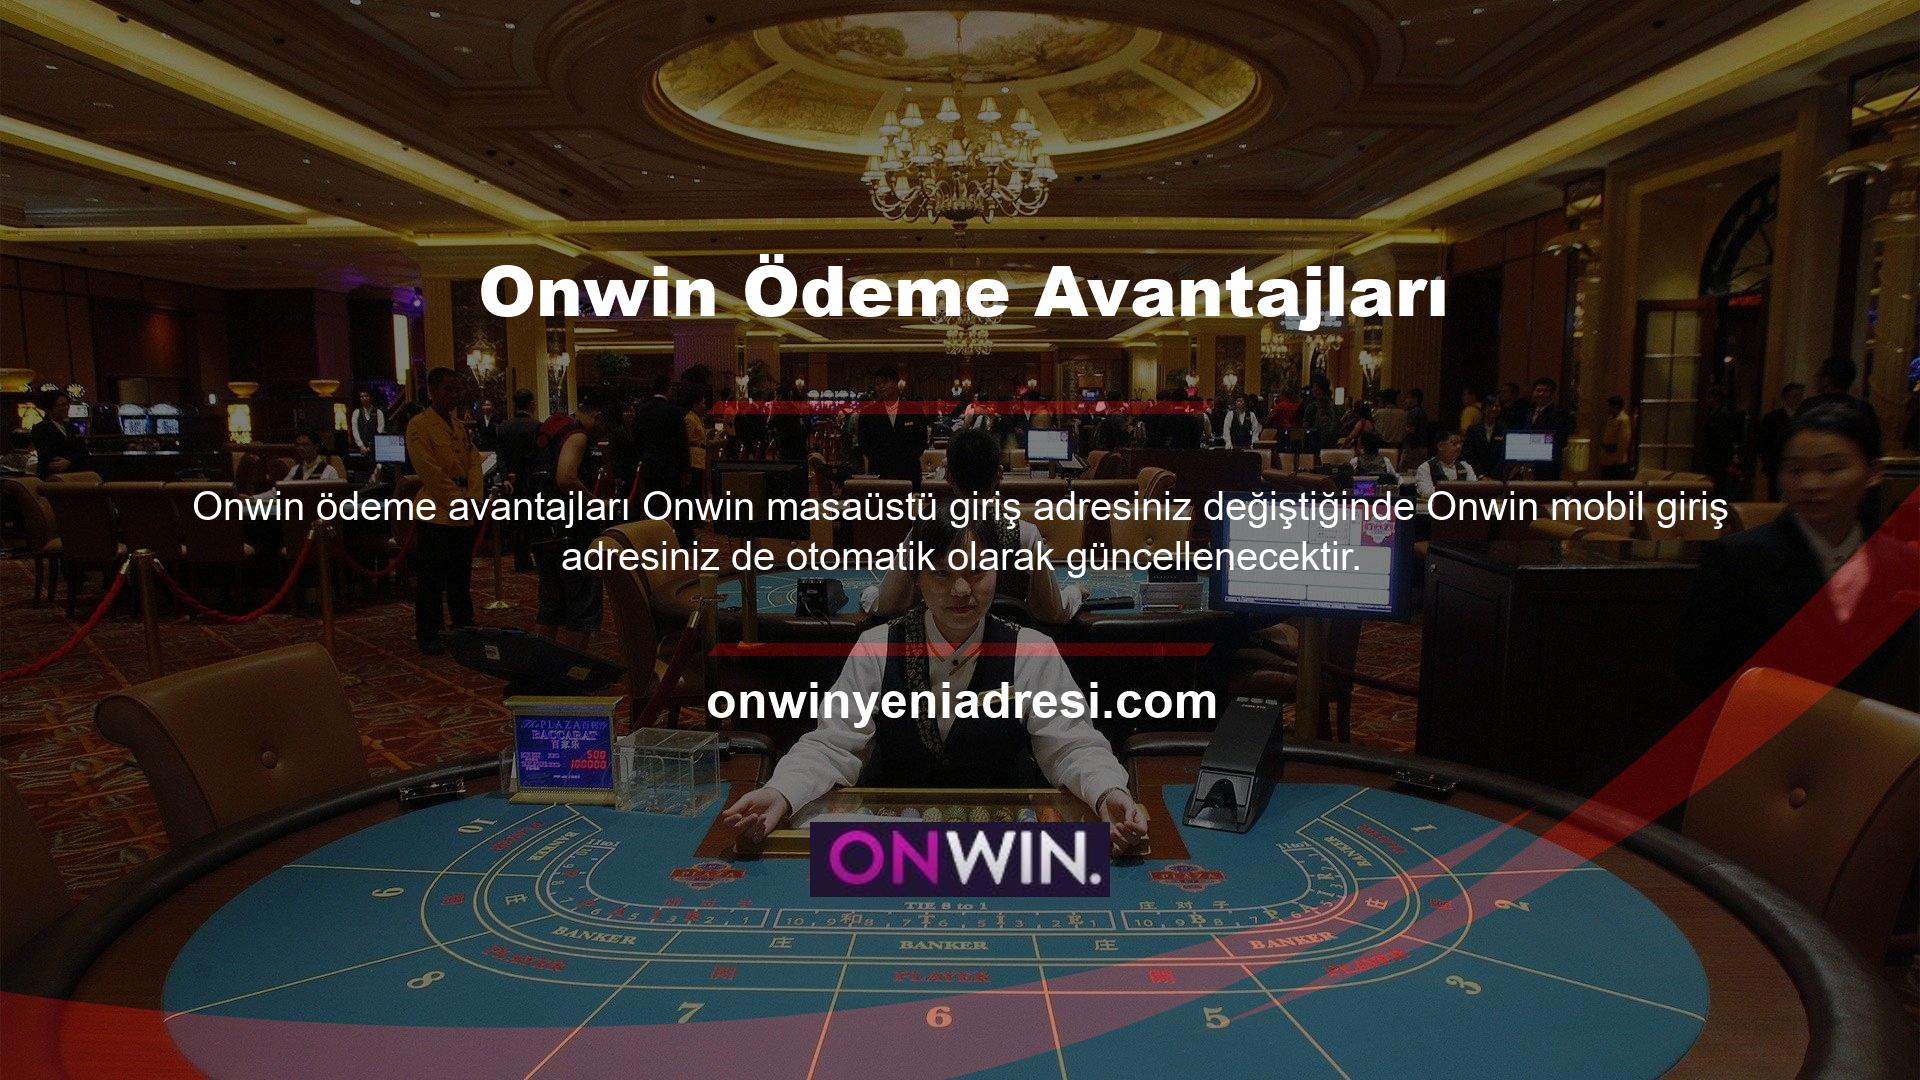 Onwin mobil giriş adresine hiçbir ek çaba harcamadan erişebilirsiniz